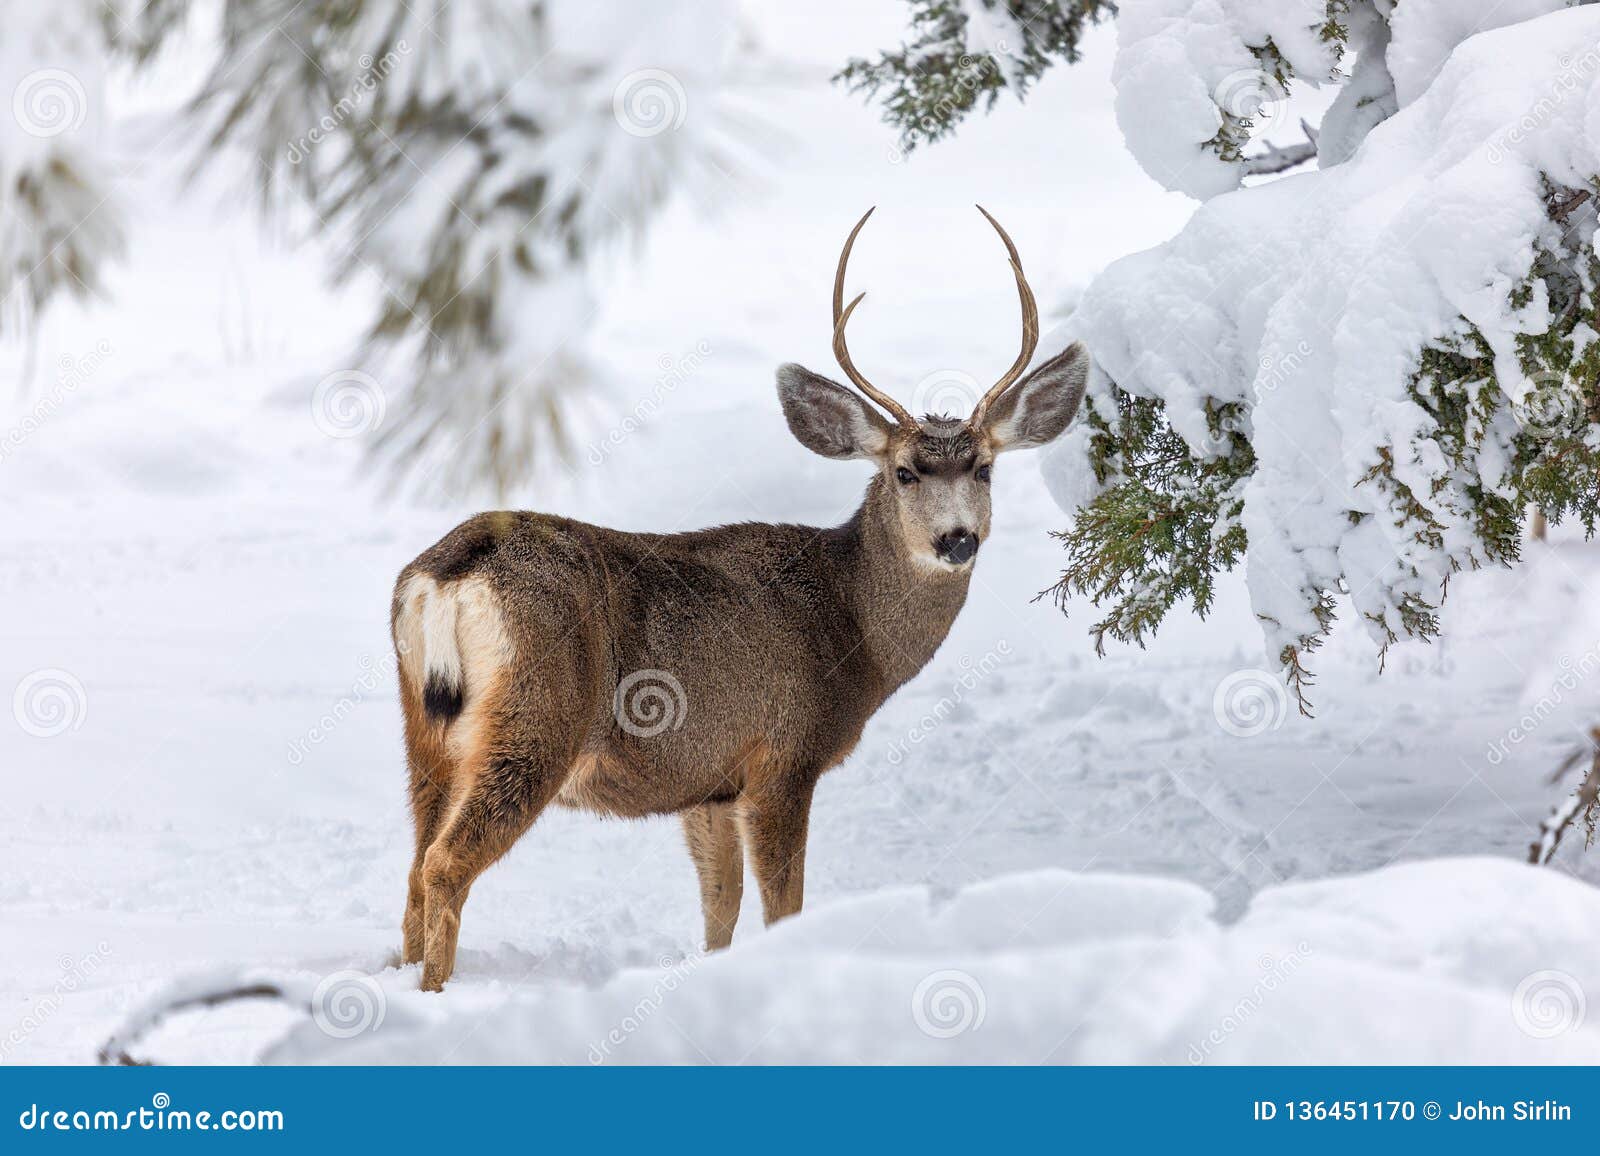 Mule deer buck in snow stock photo. Image of antlers - 136451170